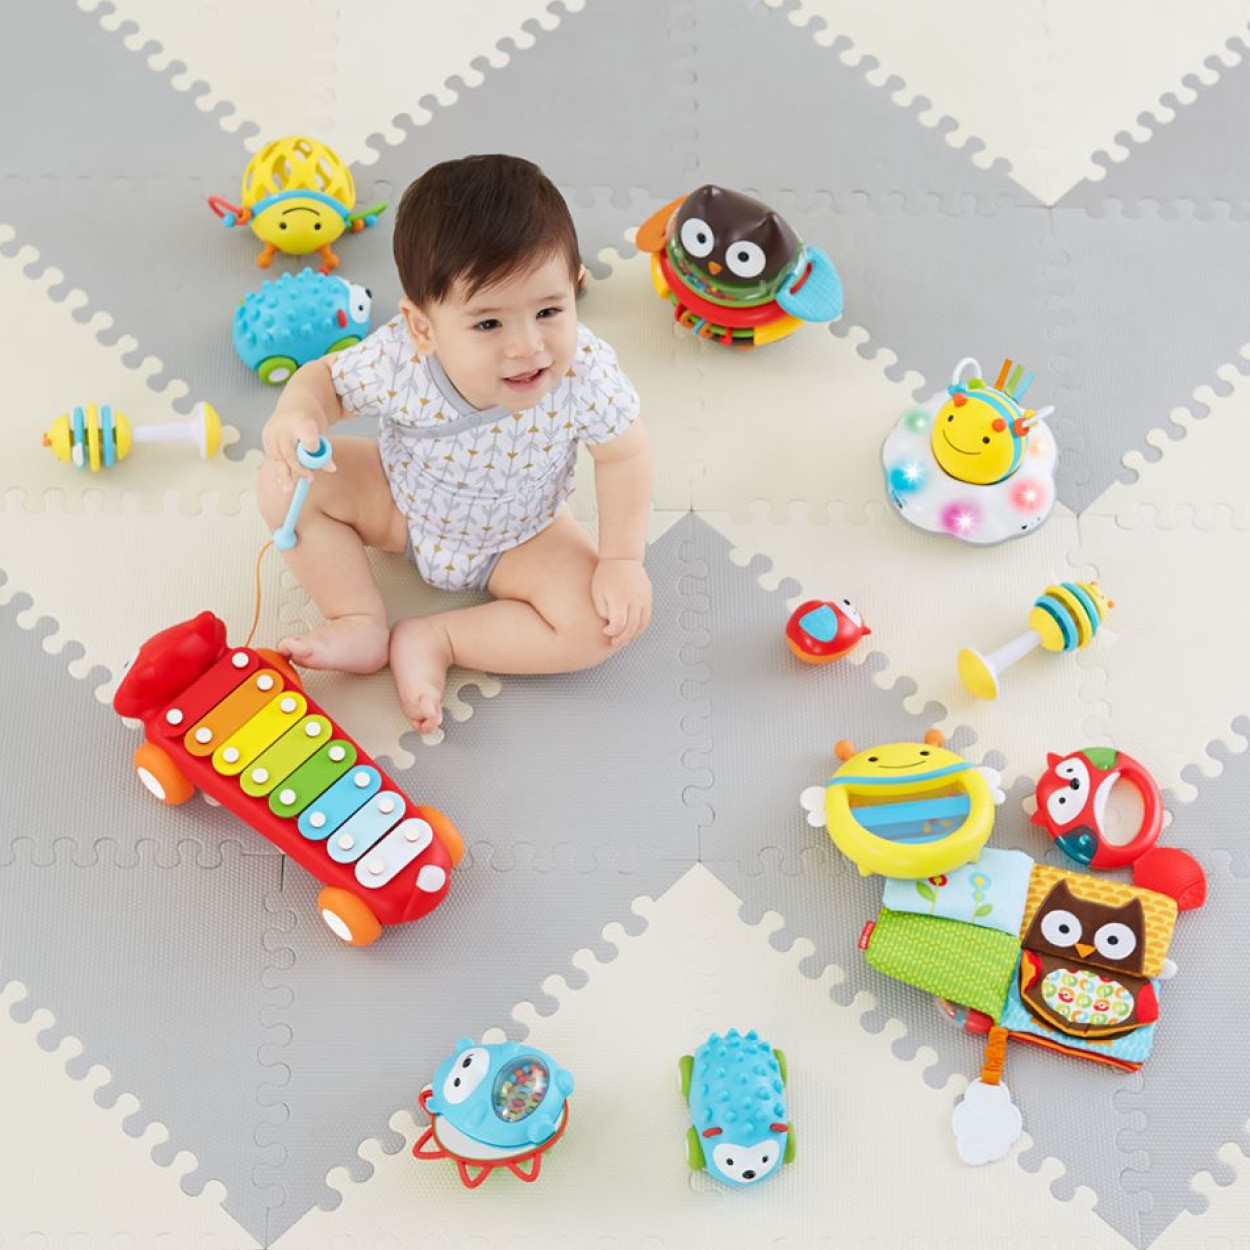 child development toys for infants